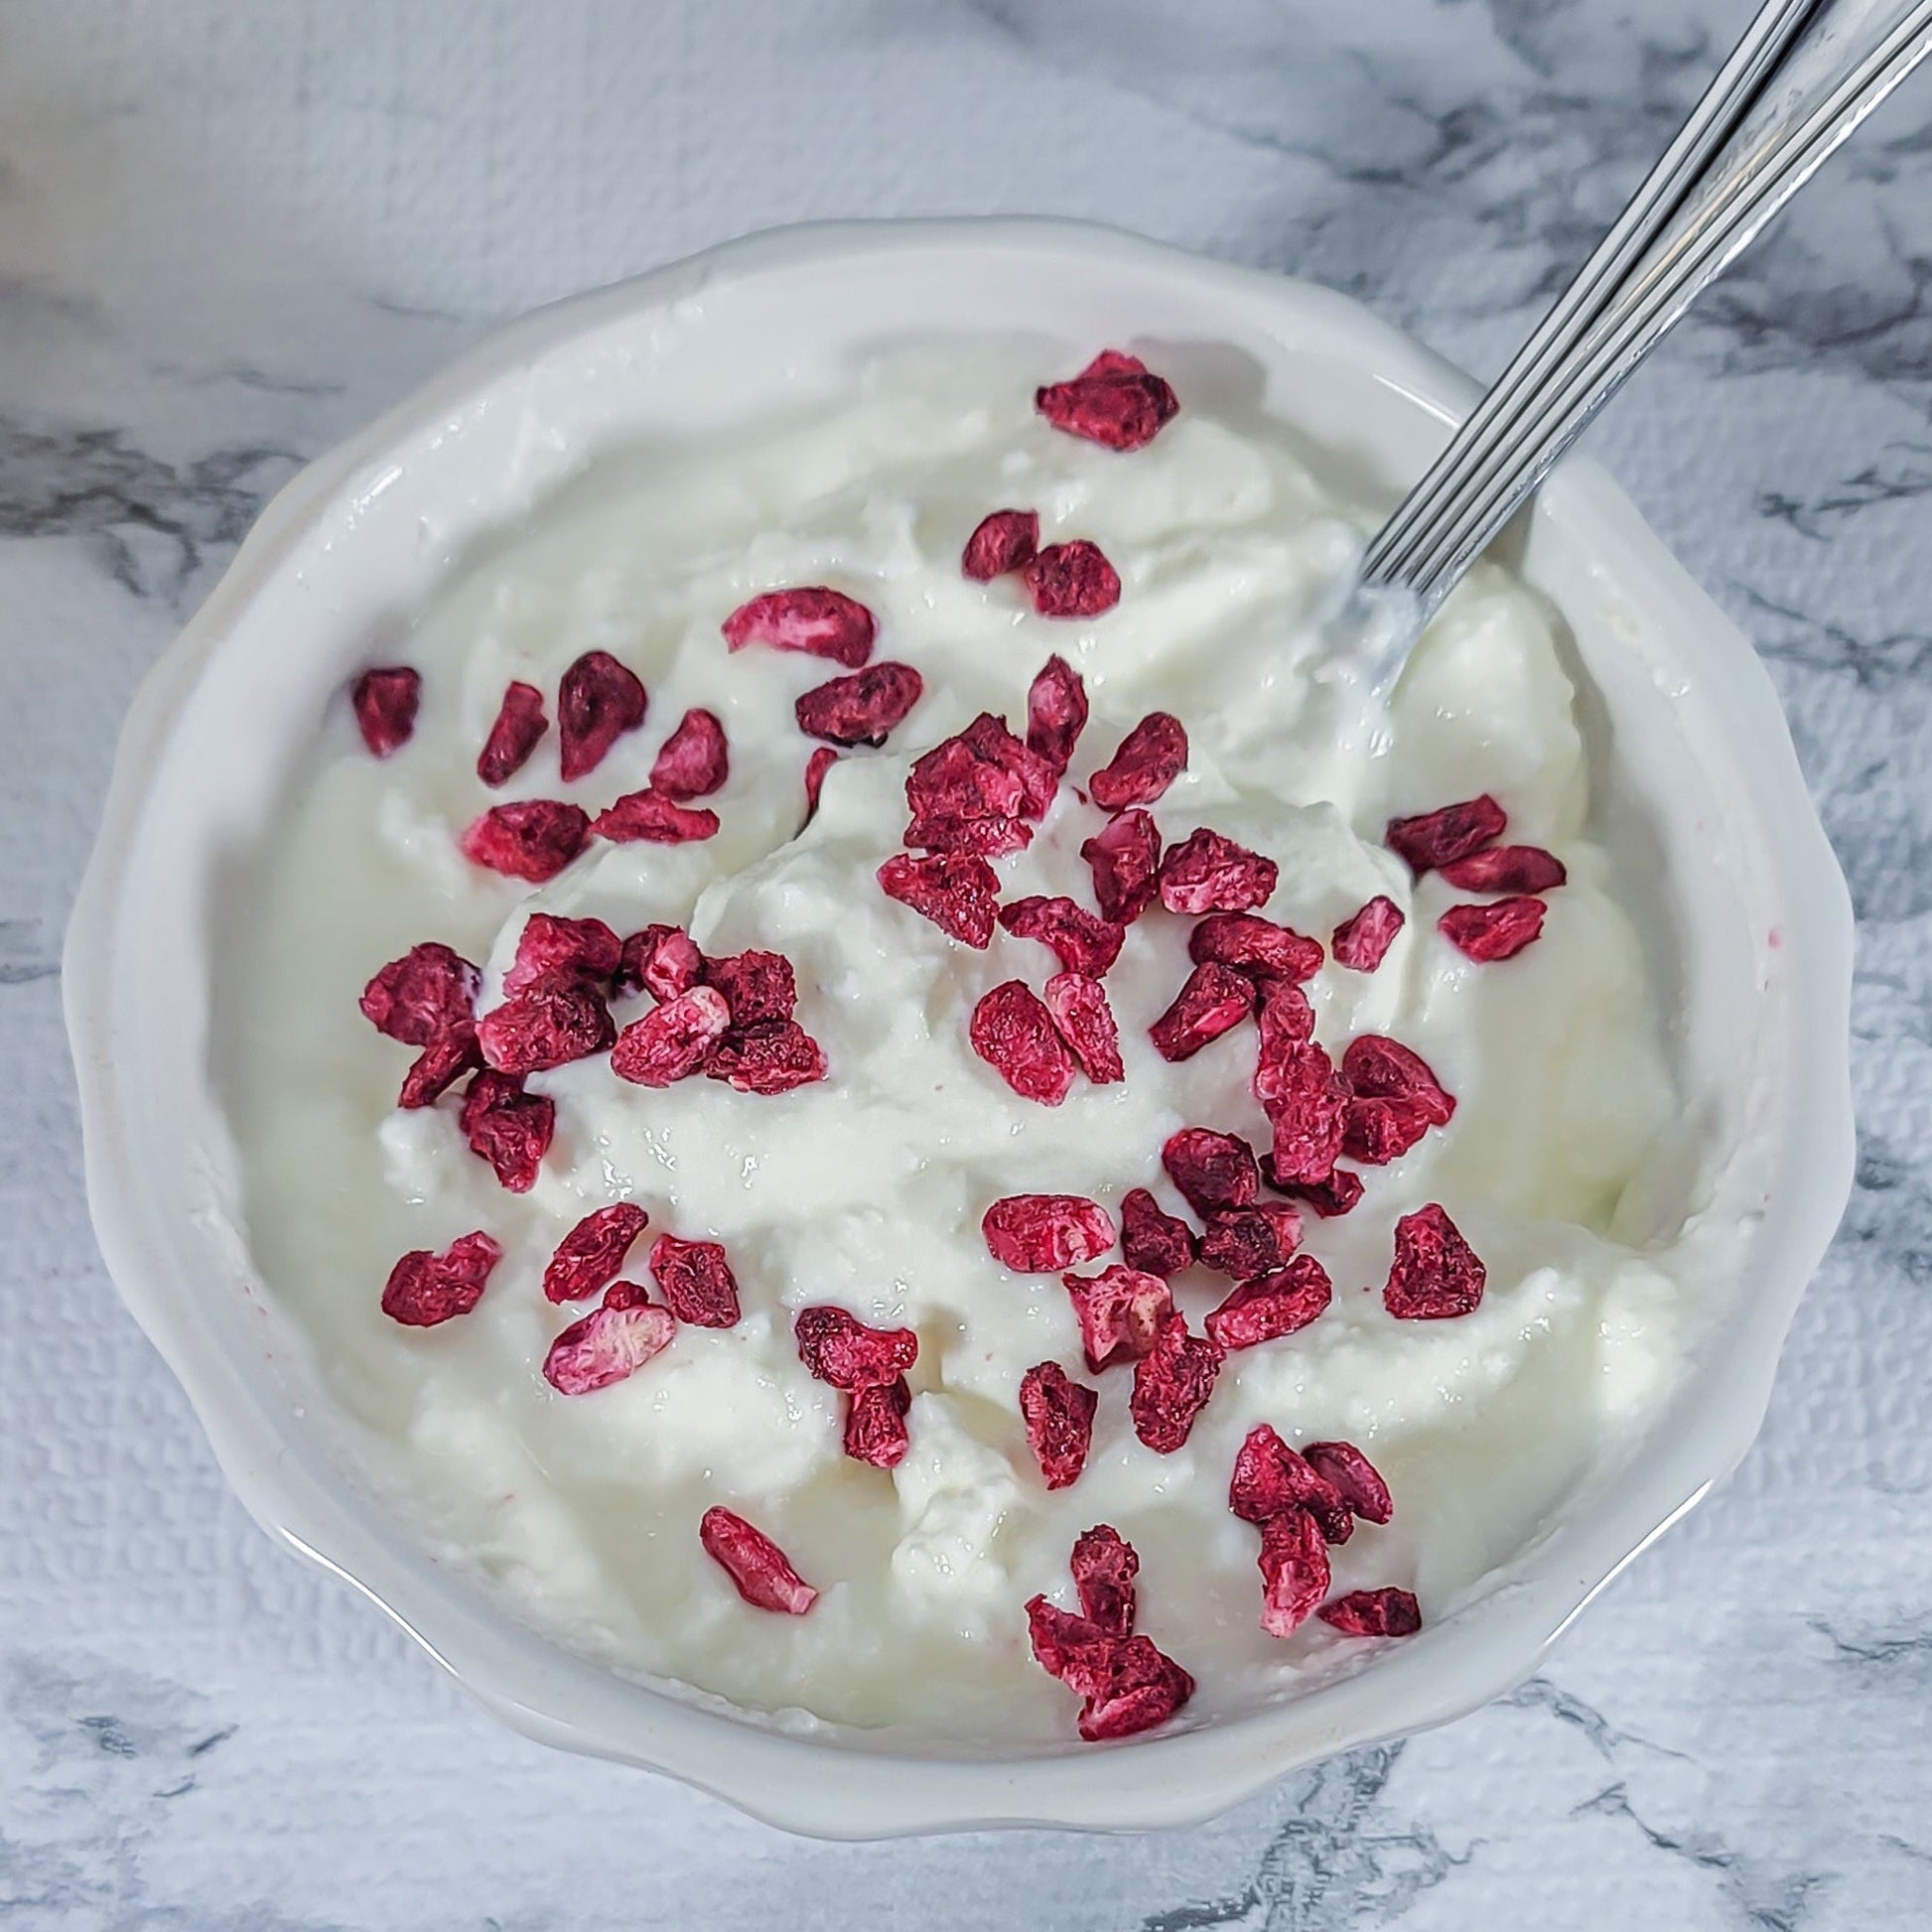 Freeze Dried Pomegranate and yogurt mix